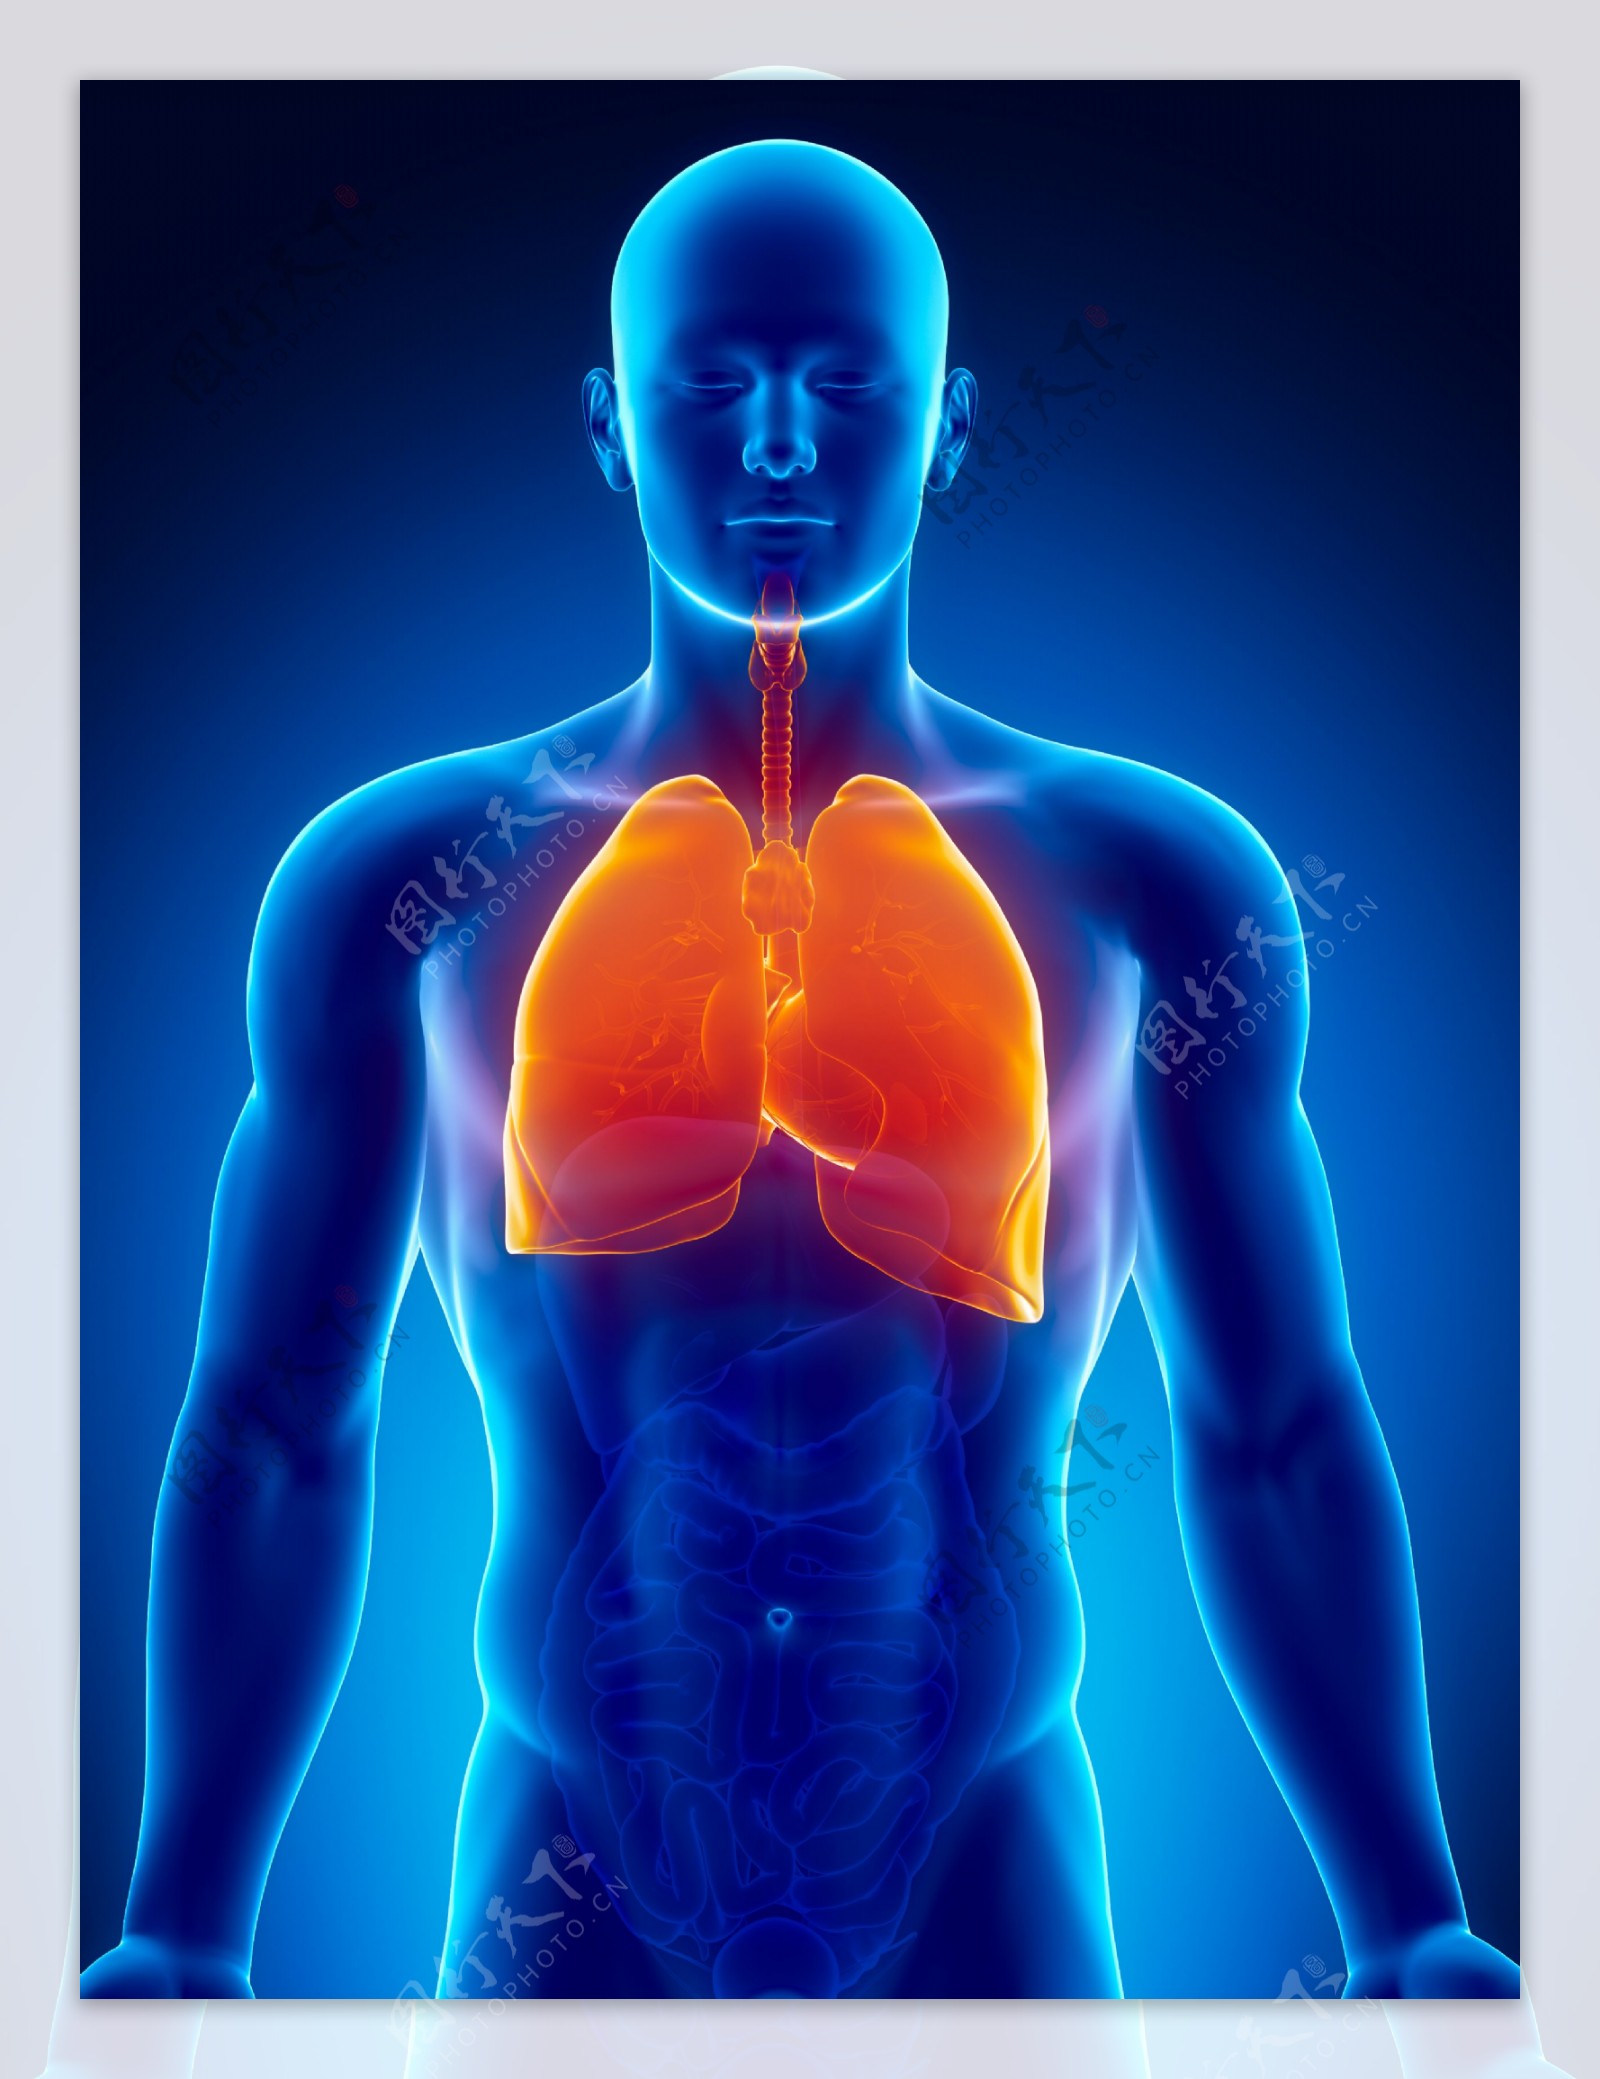 男性肺器官图片